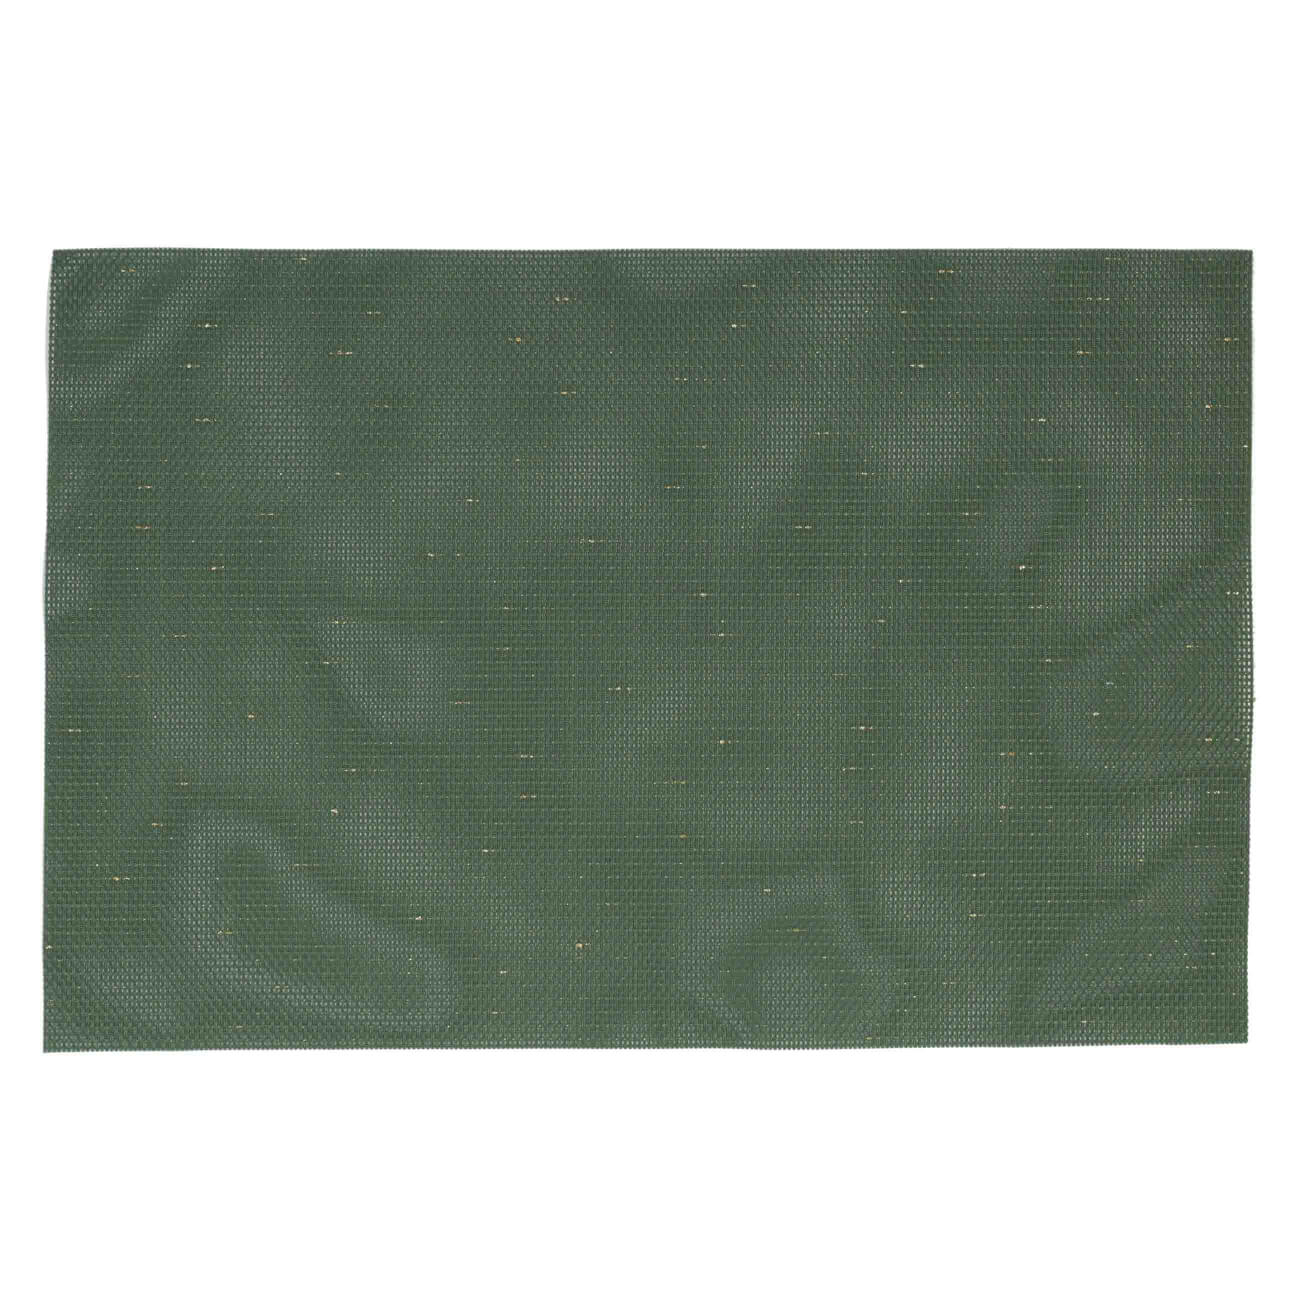 Салфетка под приборы, 30х45 см, ПВХ/полиэстер, прямоугольная, зеленая, Solid салфетка под приборы 30х45 см пвх прямоугольная белая серебристые капли rock